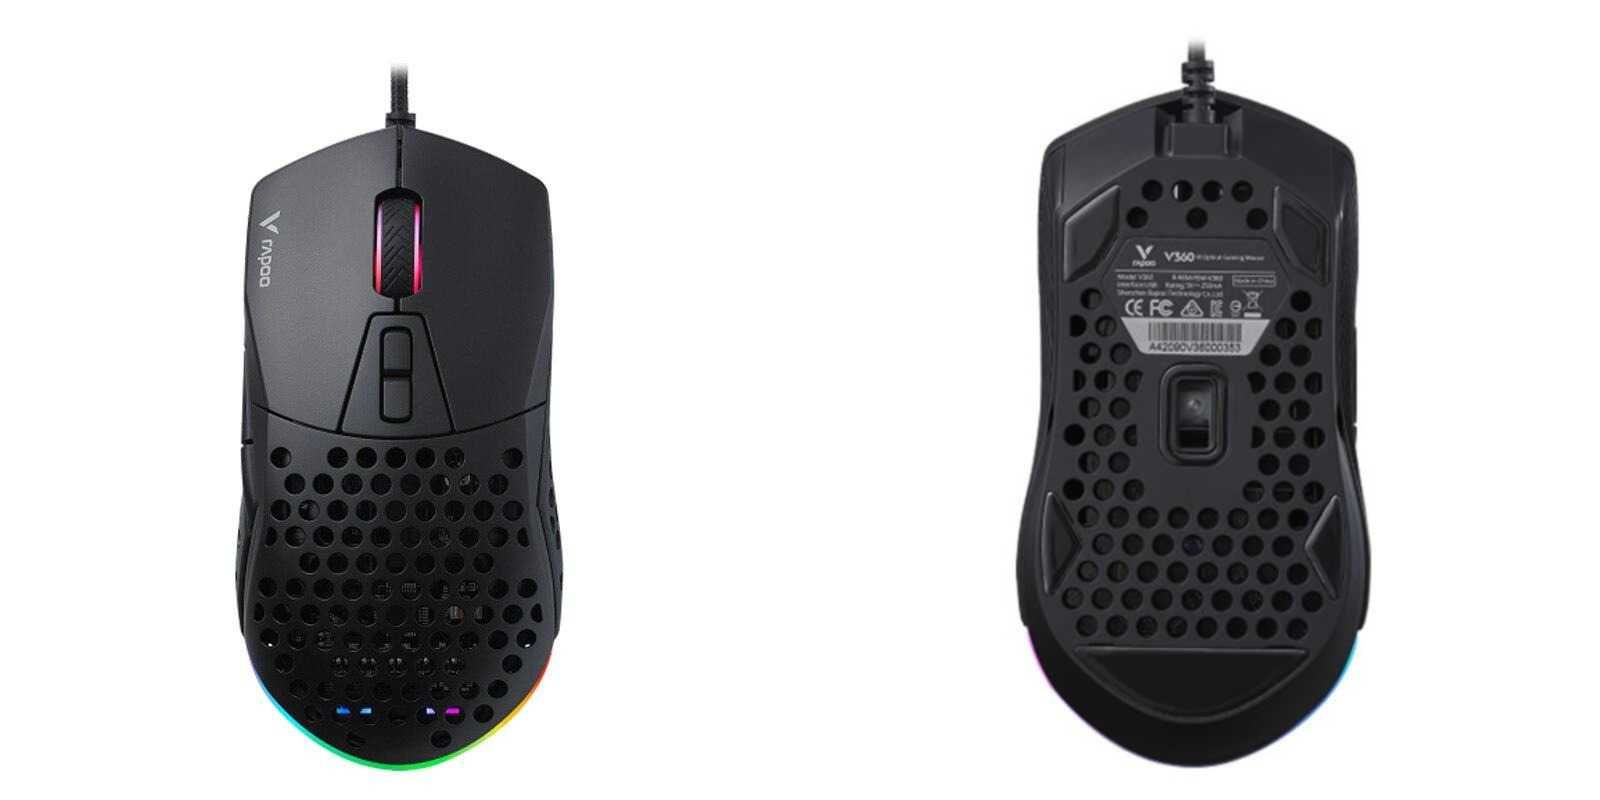 продам новый игровой мышь Rapoo V360/с 6 программируемыми кнопками